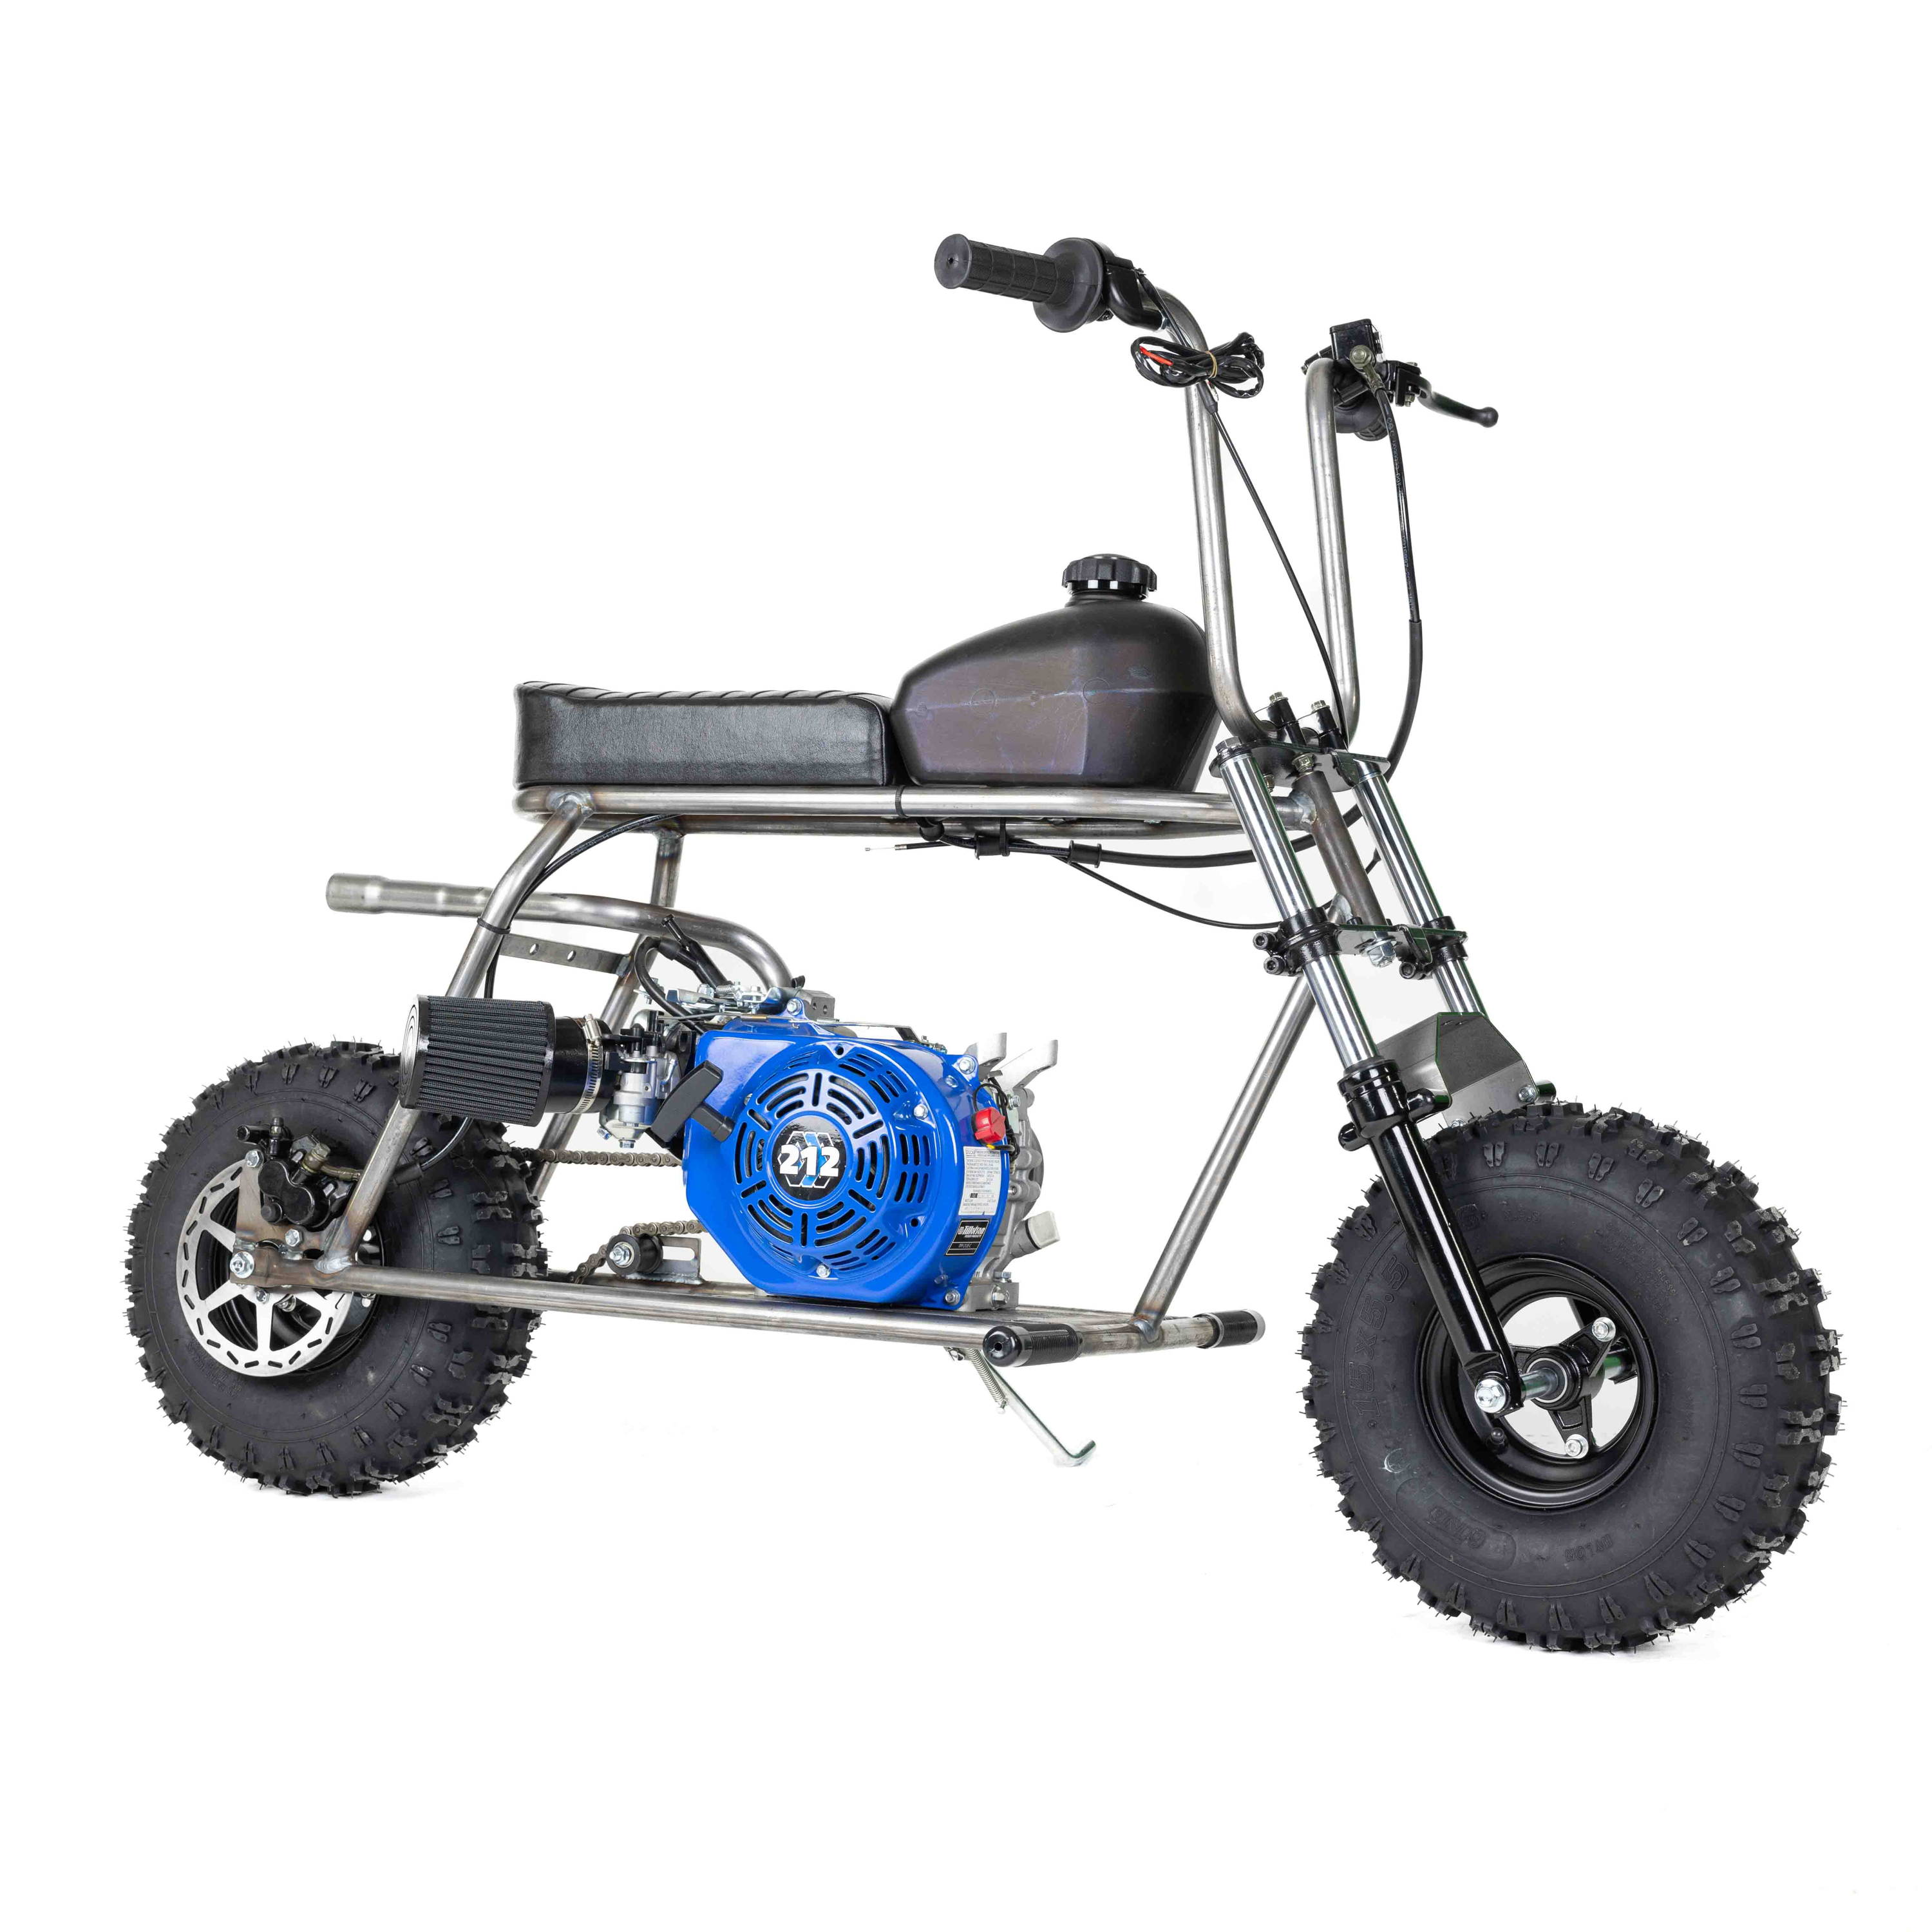 Rascal 212 Off-Road Minibike Kit